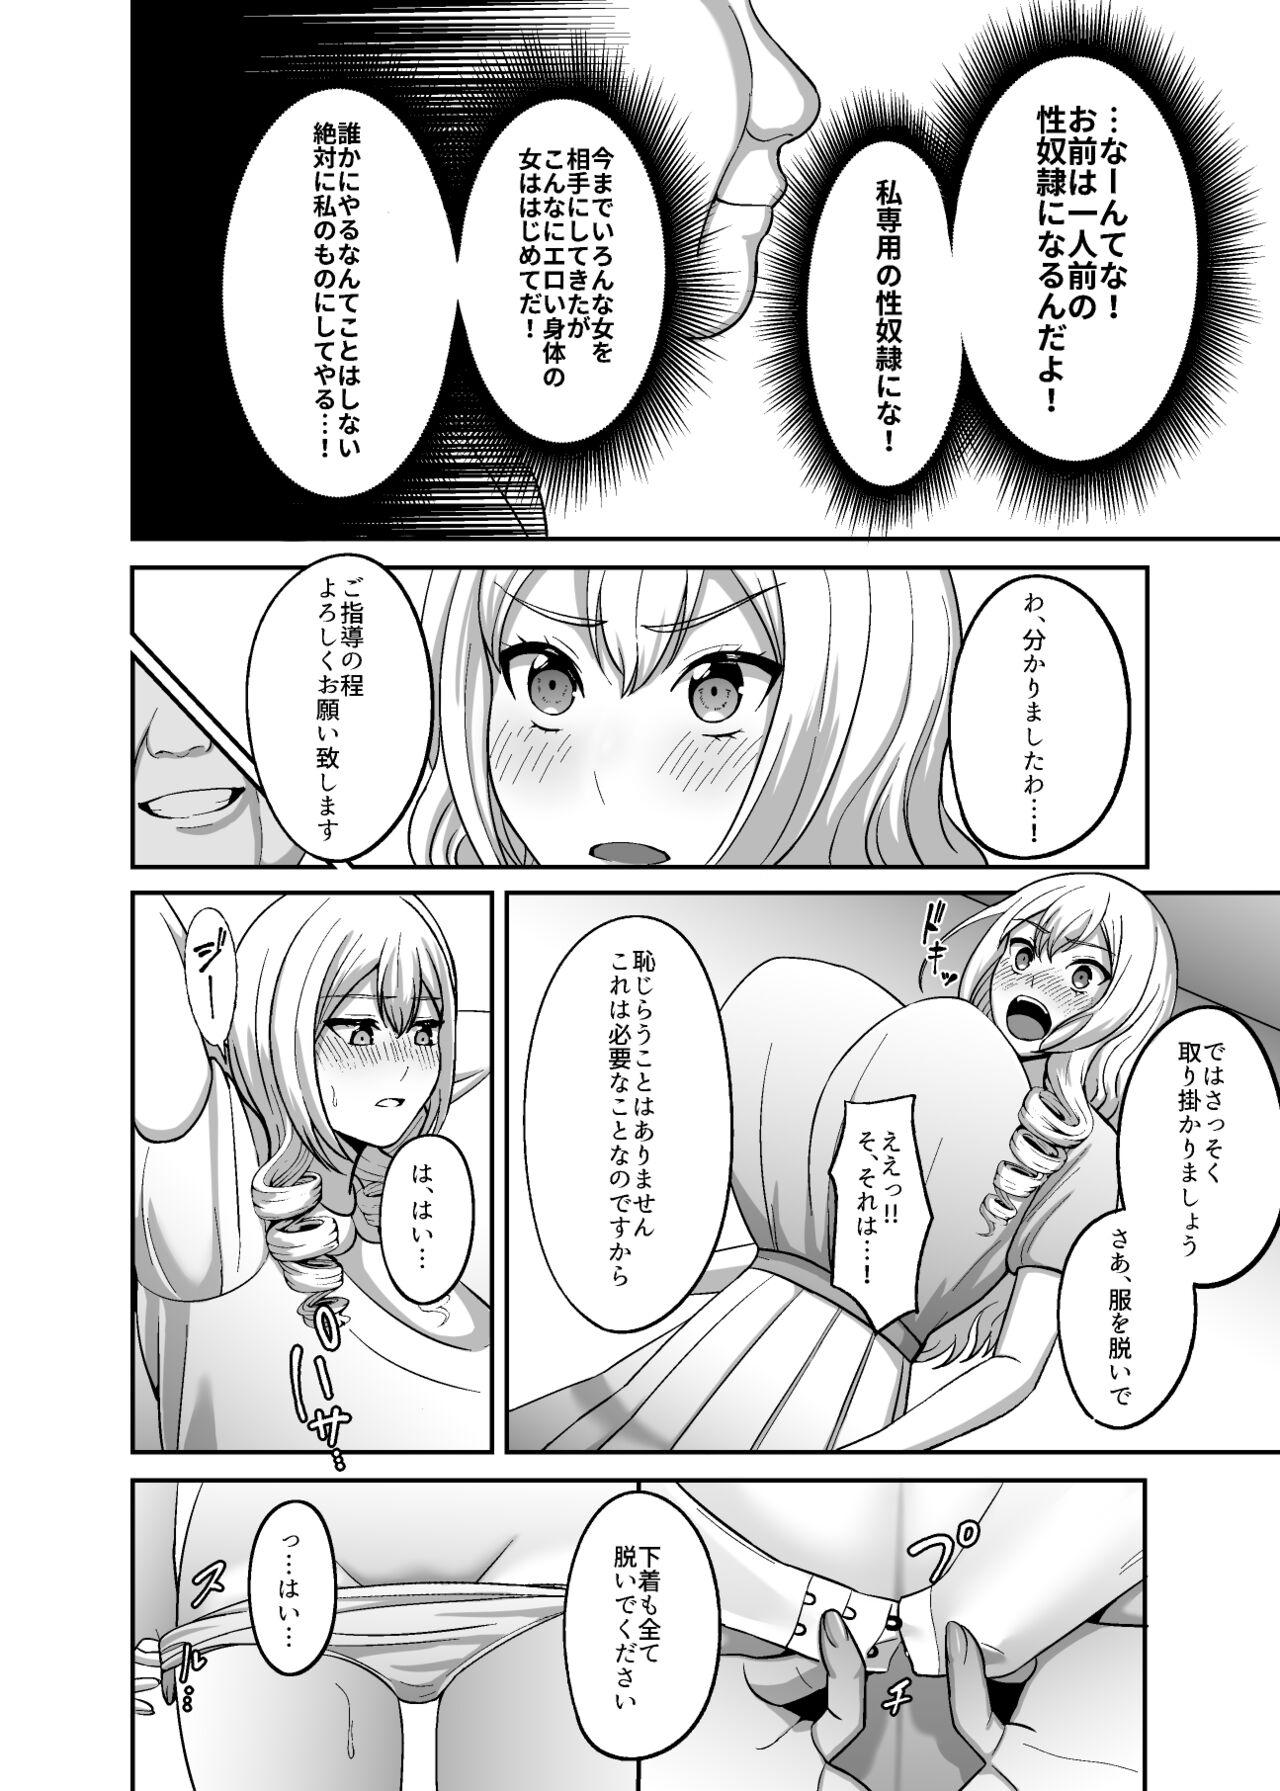 Viet Ichiryuu no Lady wa Seikoui no Gijutsu mo Ichiryuu denakute wa - Original Trans - Page 5